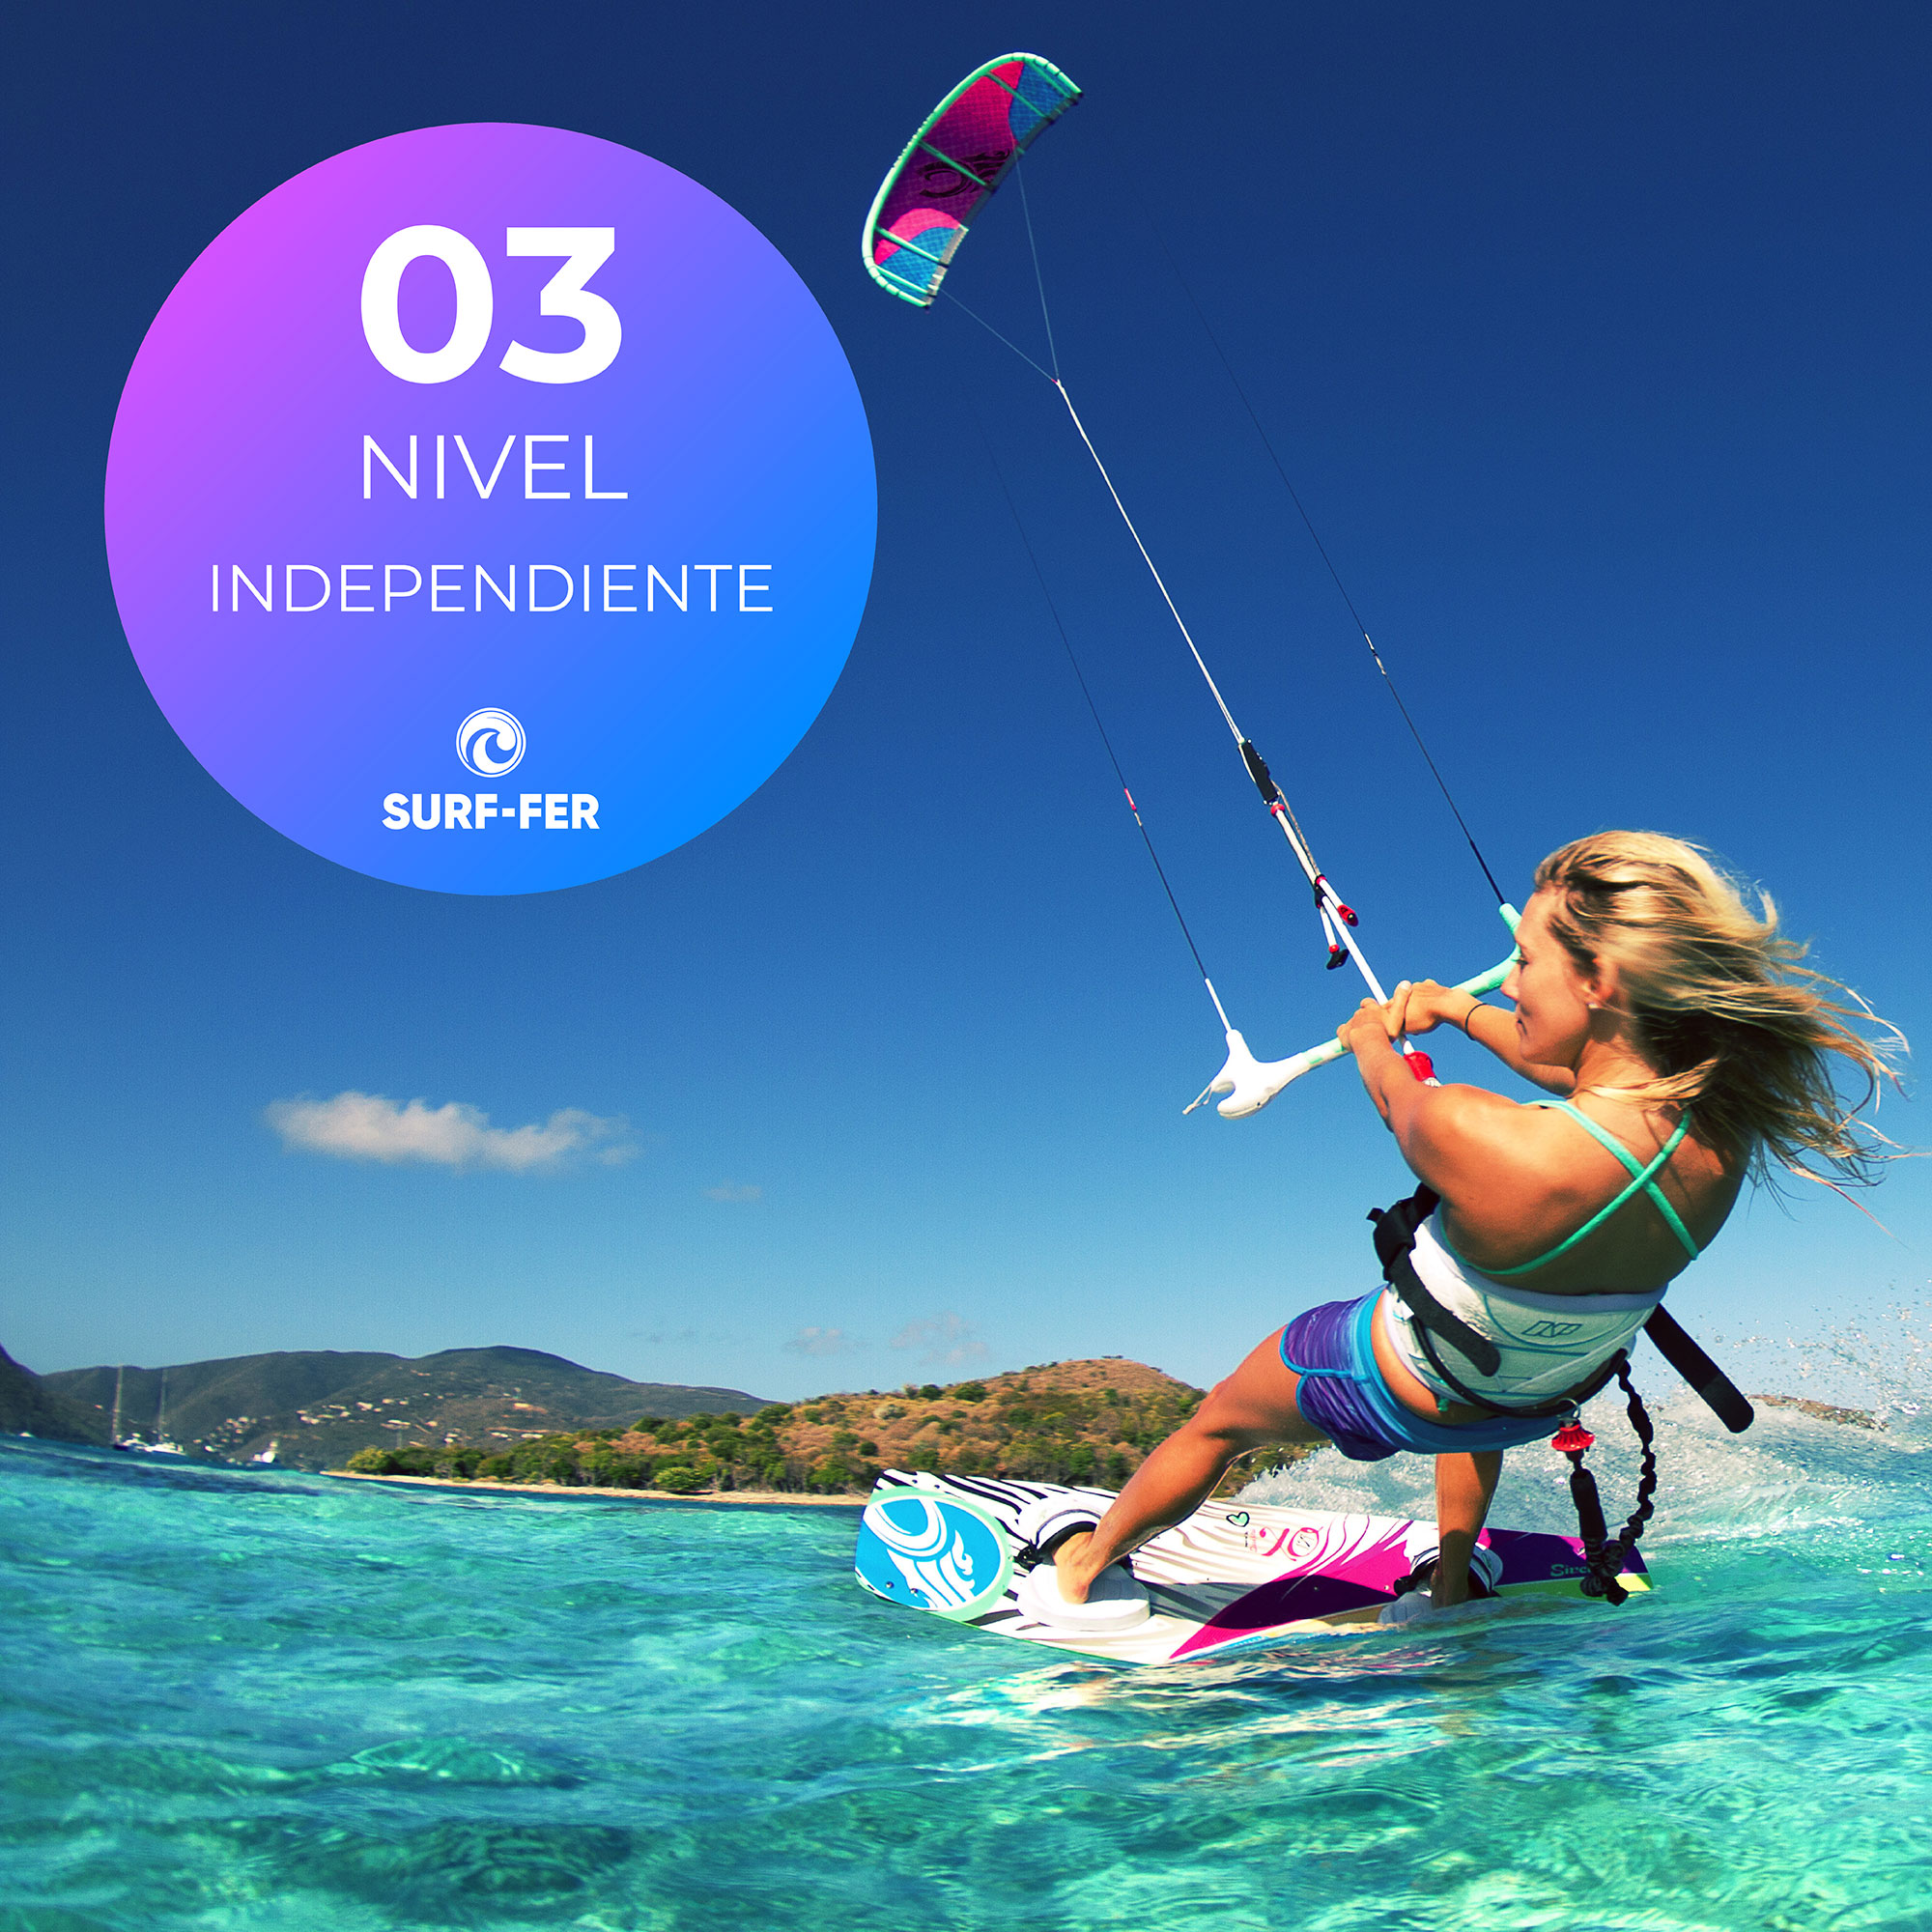 parcialidad Colector Tratamiento Curso de Kitesurf | Independiente (Nivel 3) - Surf-fer